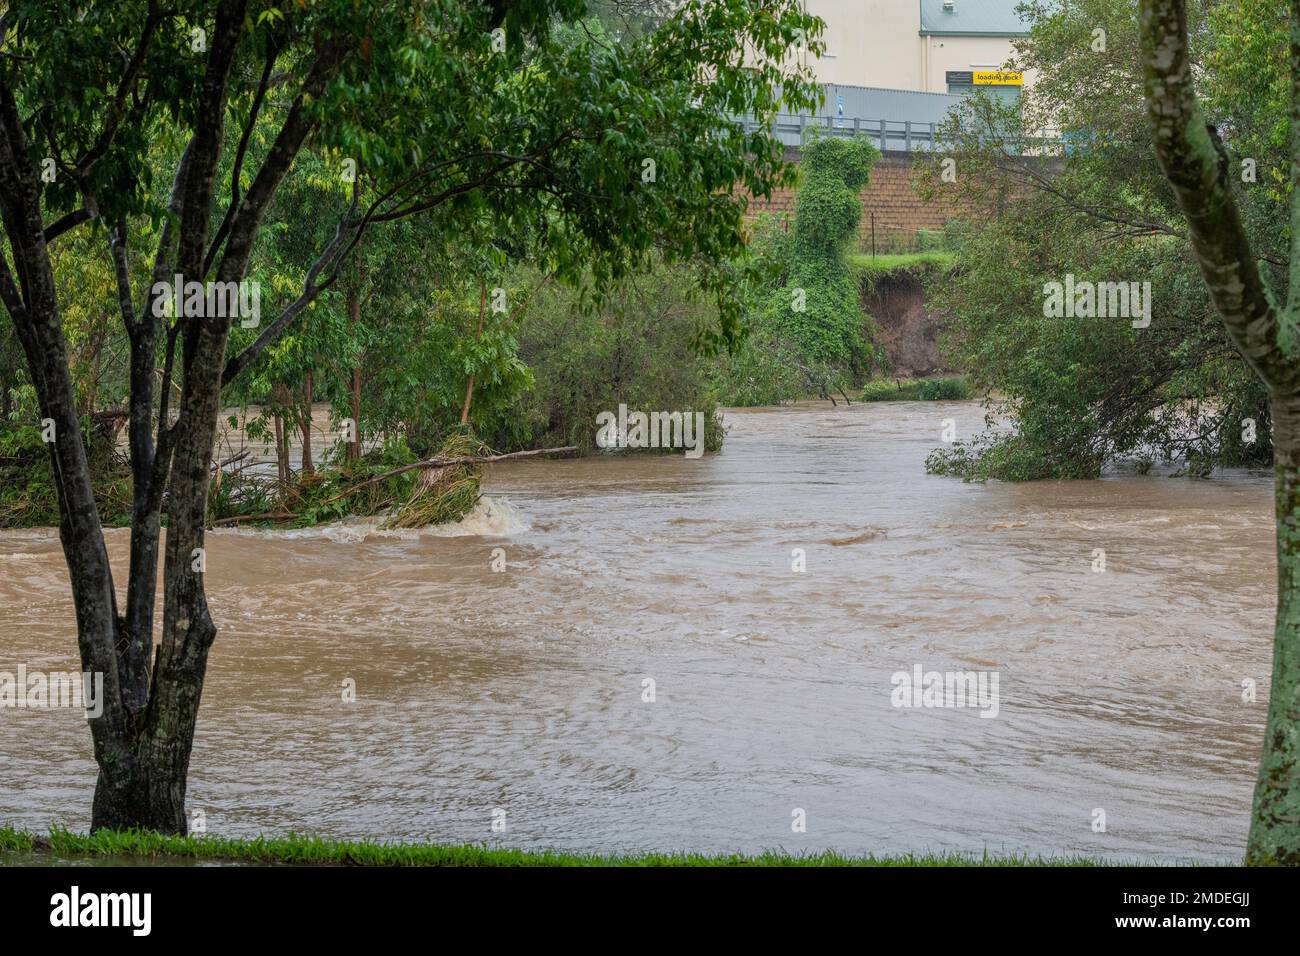 Inondation au parc Teralba à Mitchelton pendant l'inondation extrême de février 2022 en Australie Banque D'Images